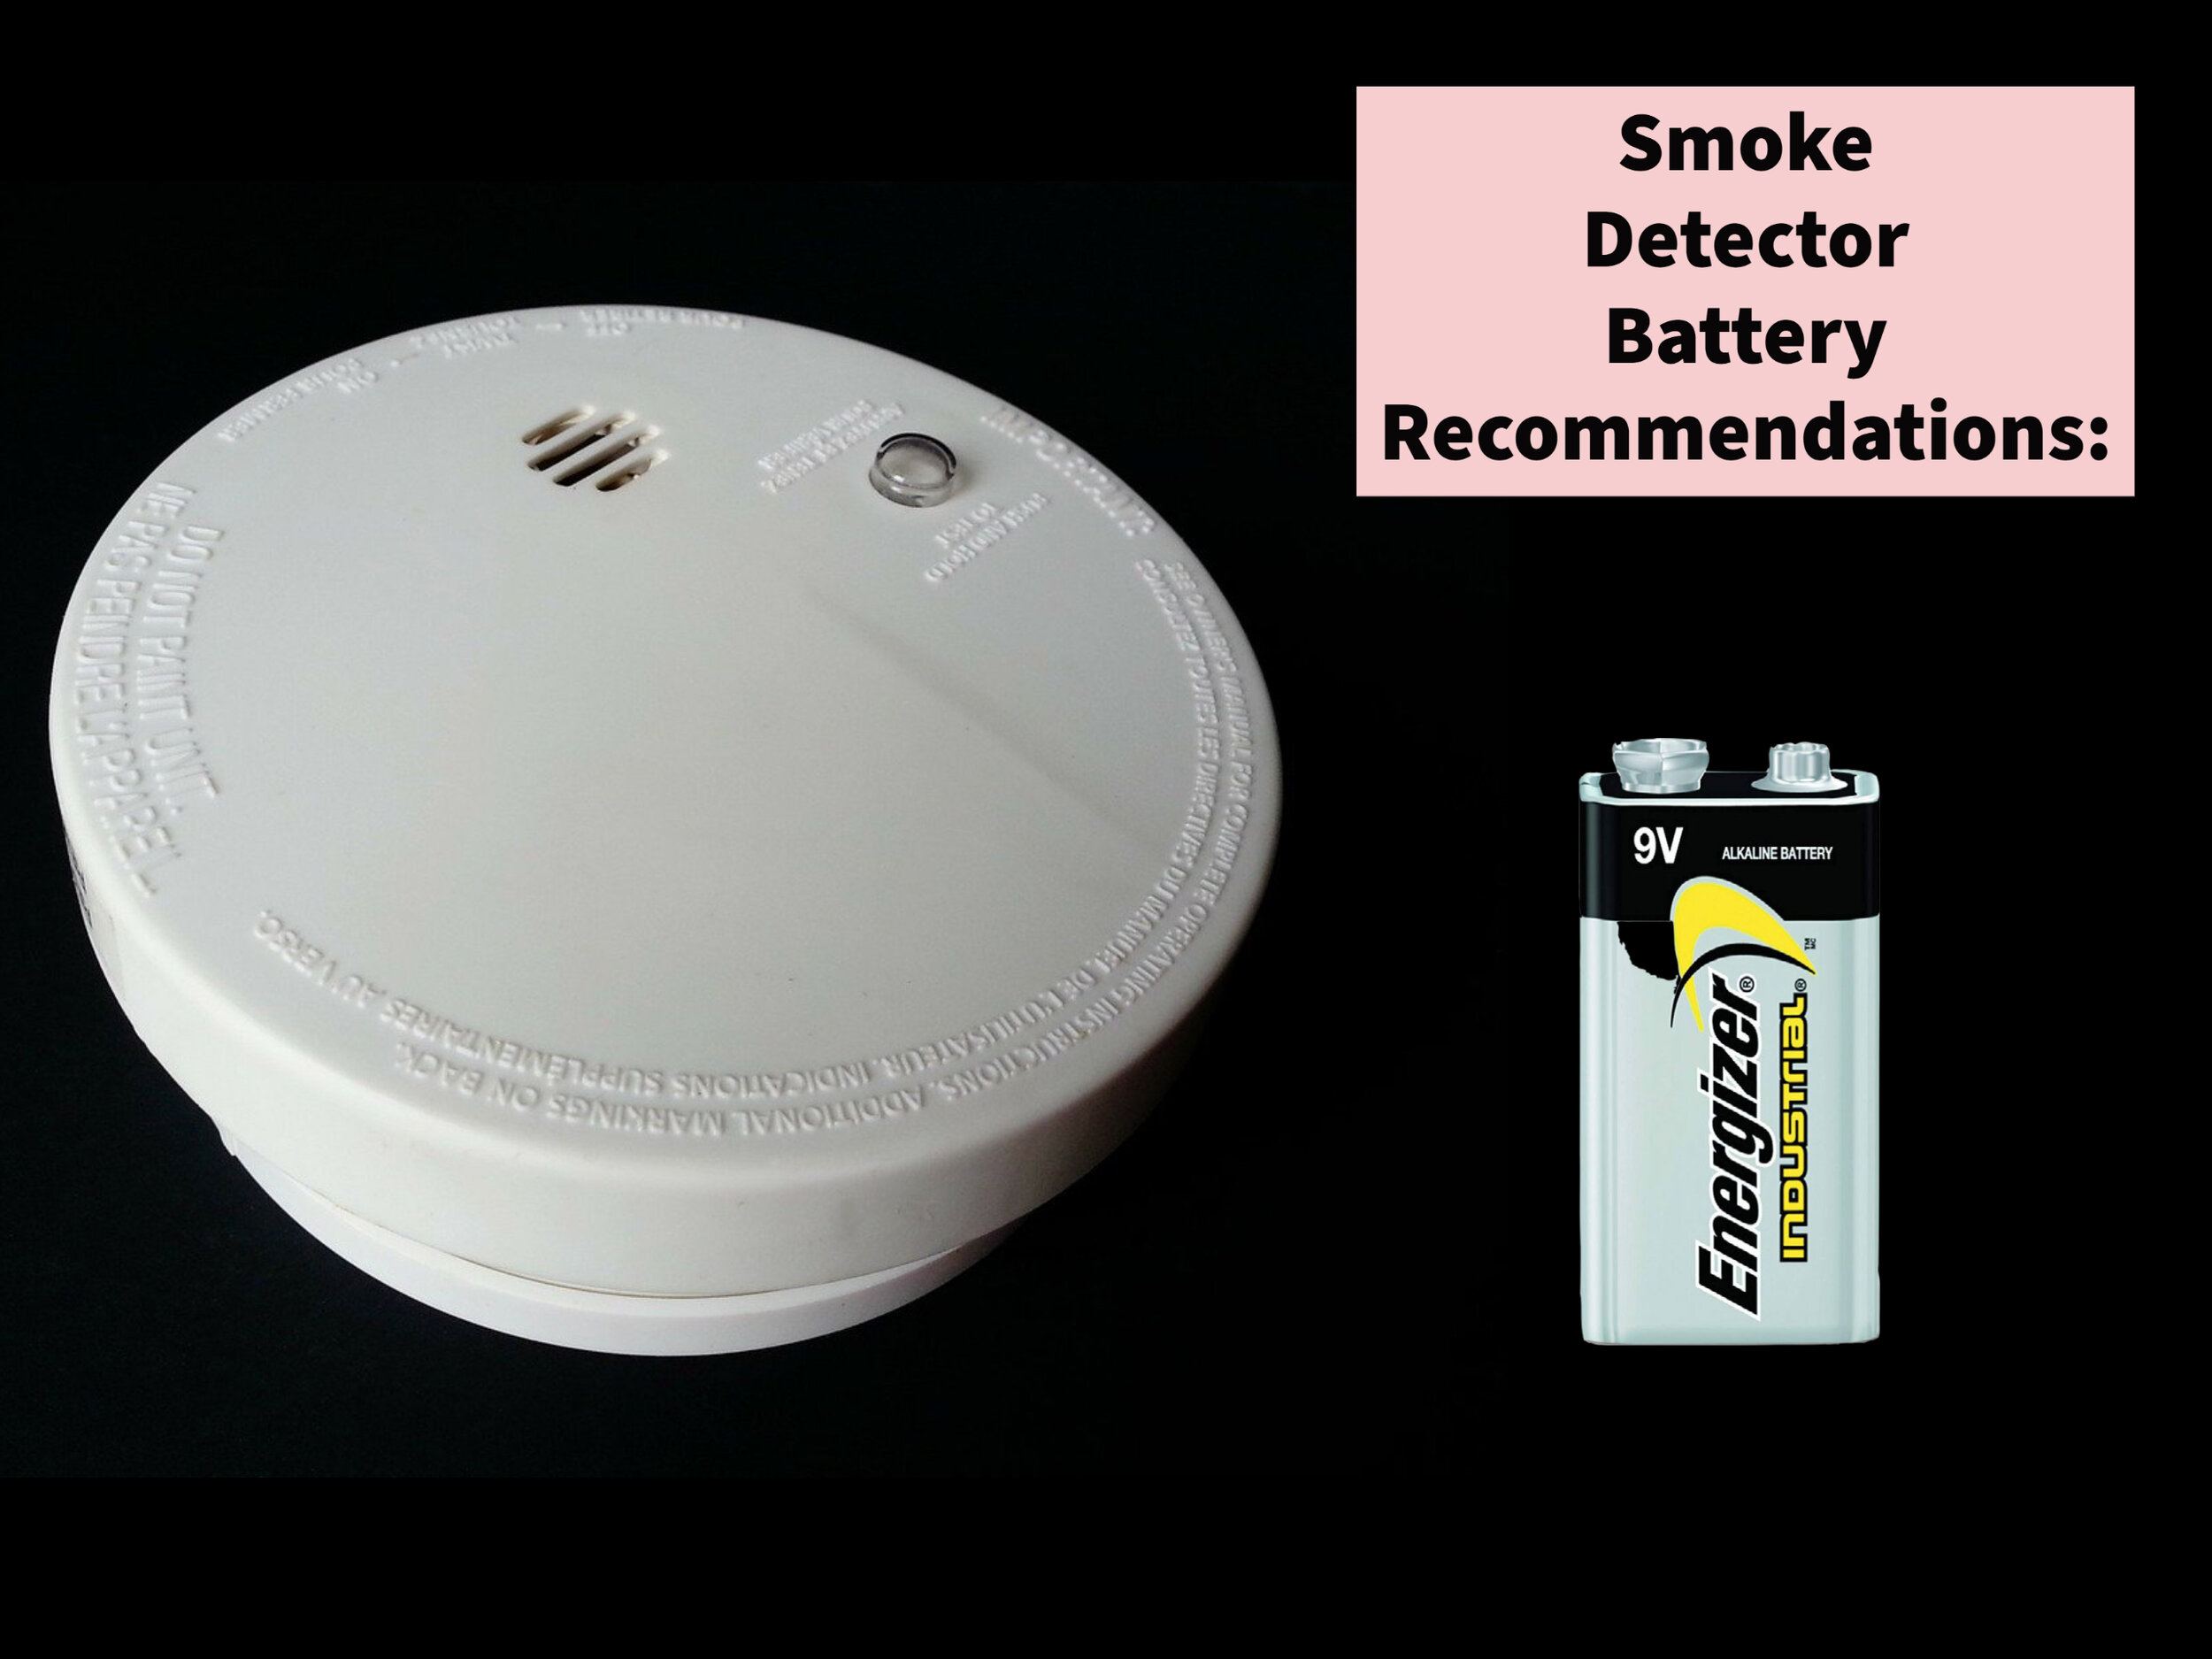 ¿Qué marca de batería es mejor para los detectores de humo?